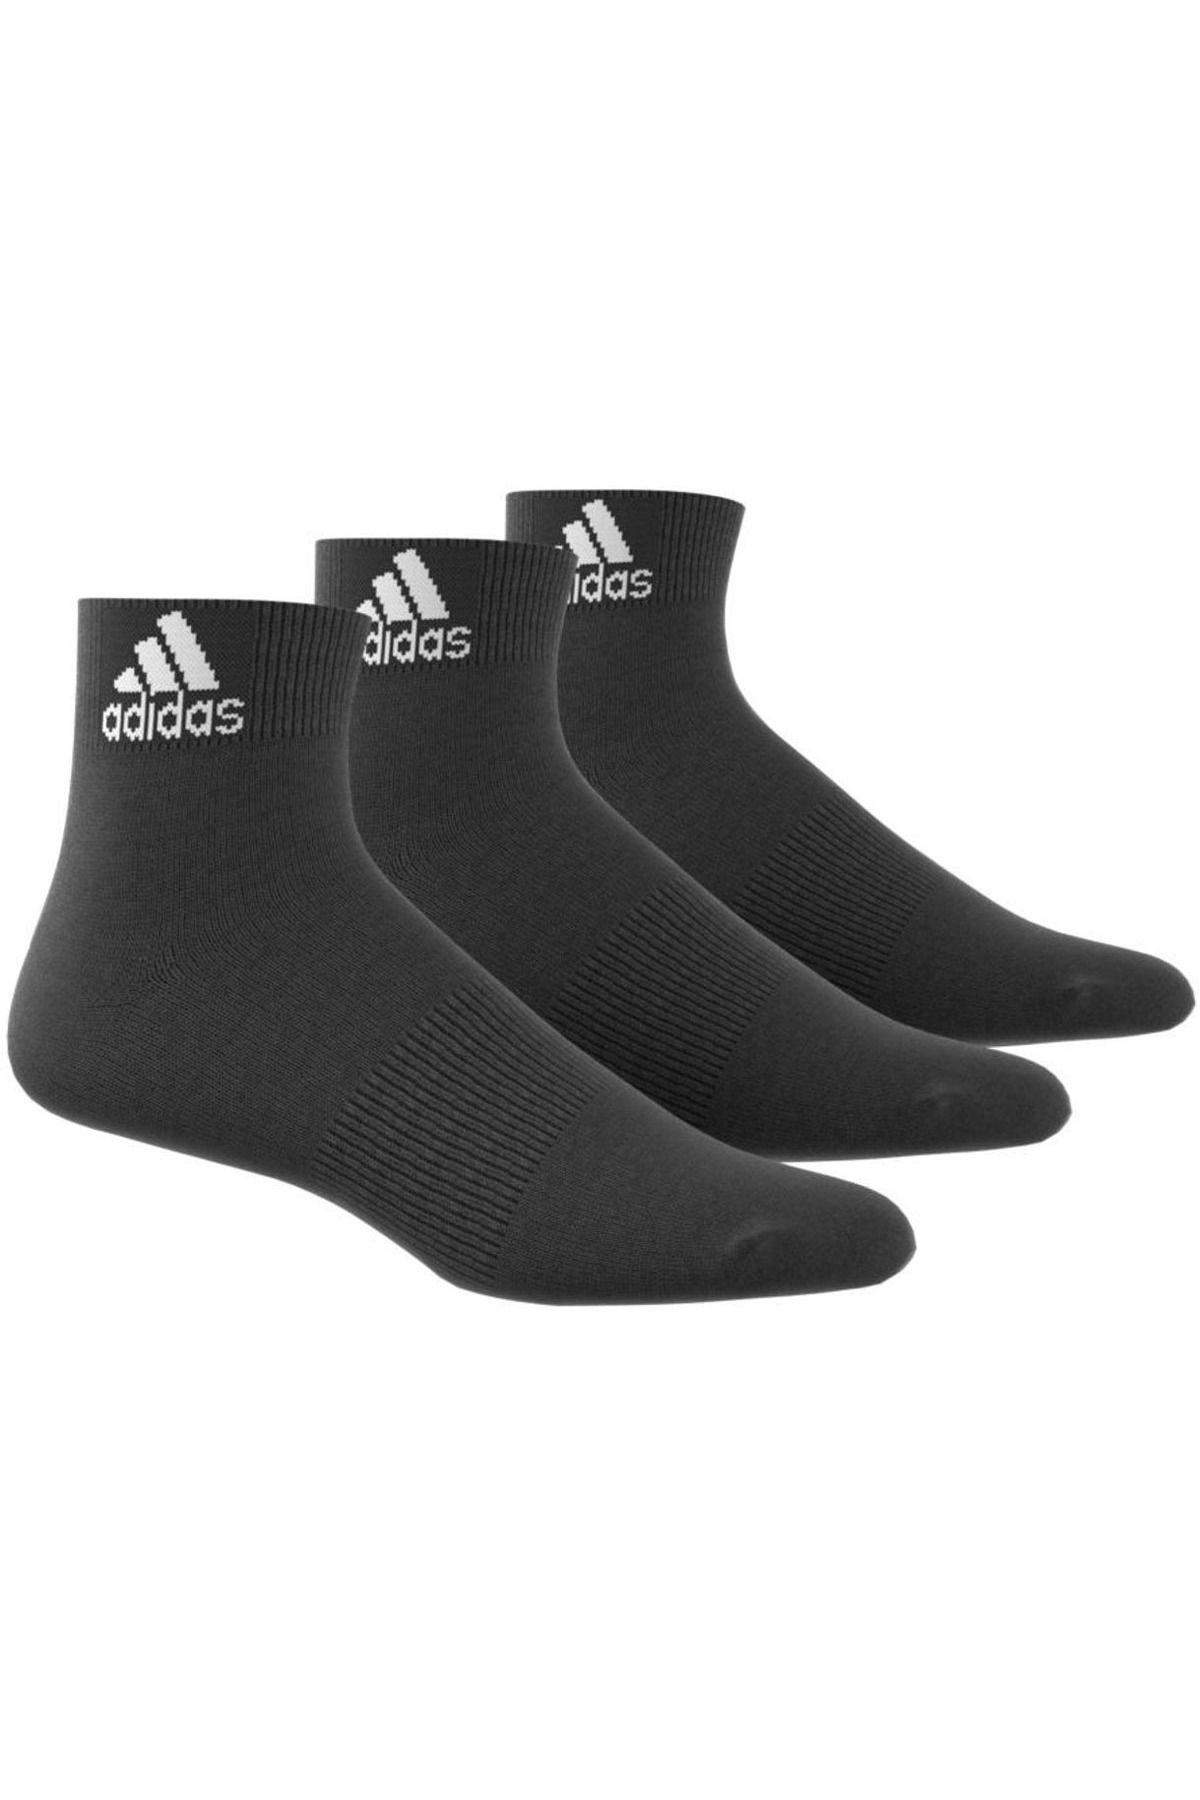 adidas Performance Ankle Kadın Siyah 3lü Antrenman Çorabı Aa2321